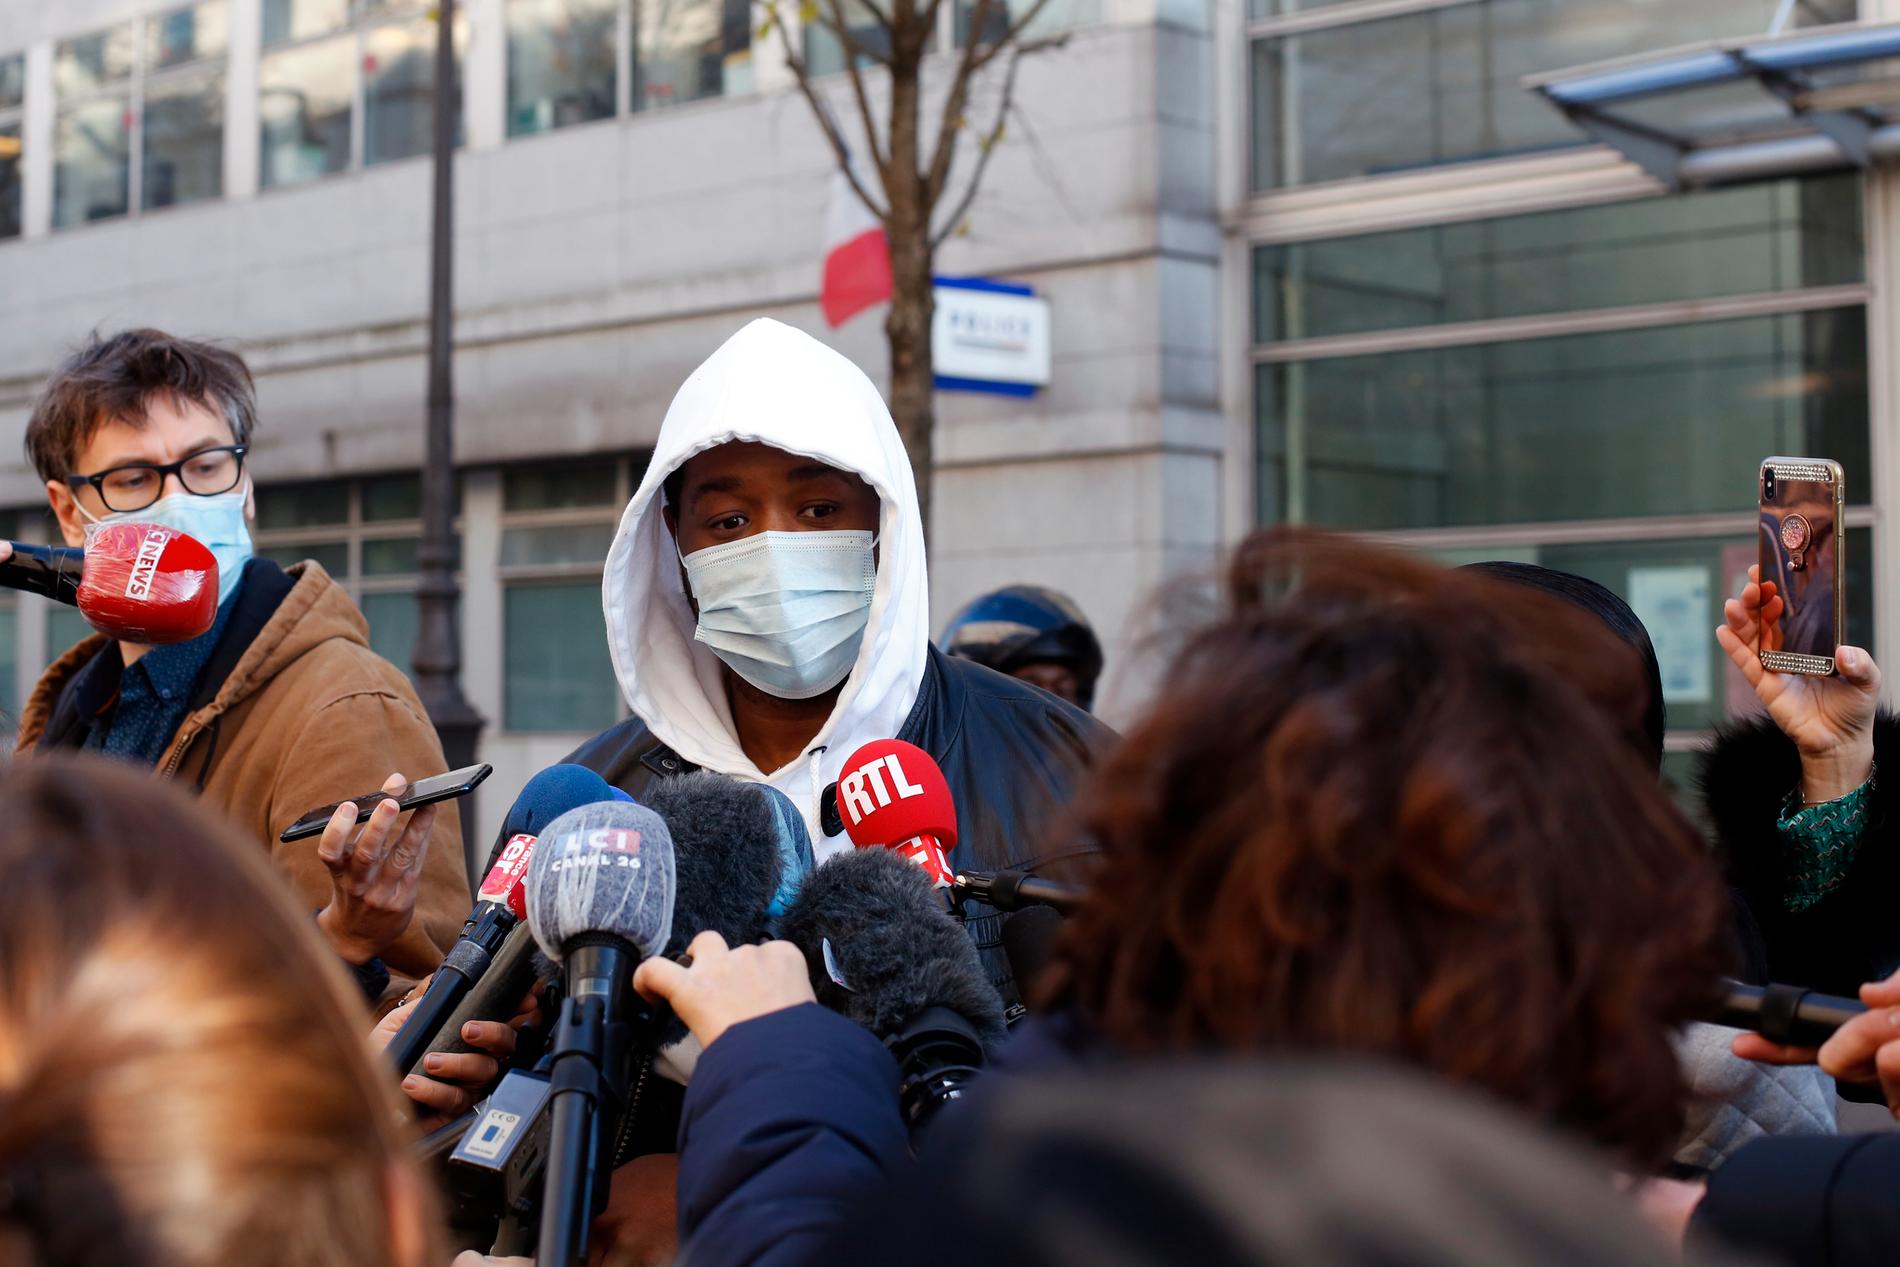 Fyra poliser utreds för brotten efter misshandeln av Michel Zecler, som under torsdagen intervjuades utanför sjukhuset där han vårdats. Händelsen har utlöst stora protester i Frankrike.